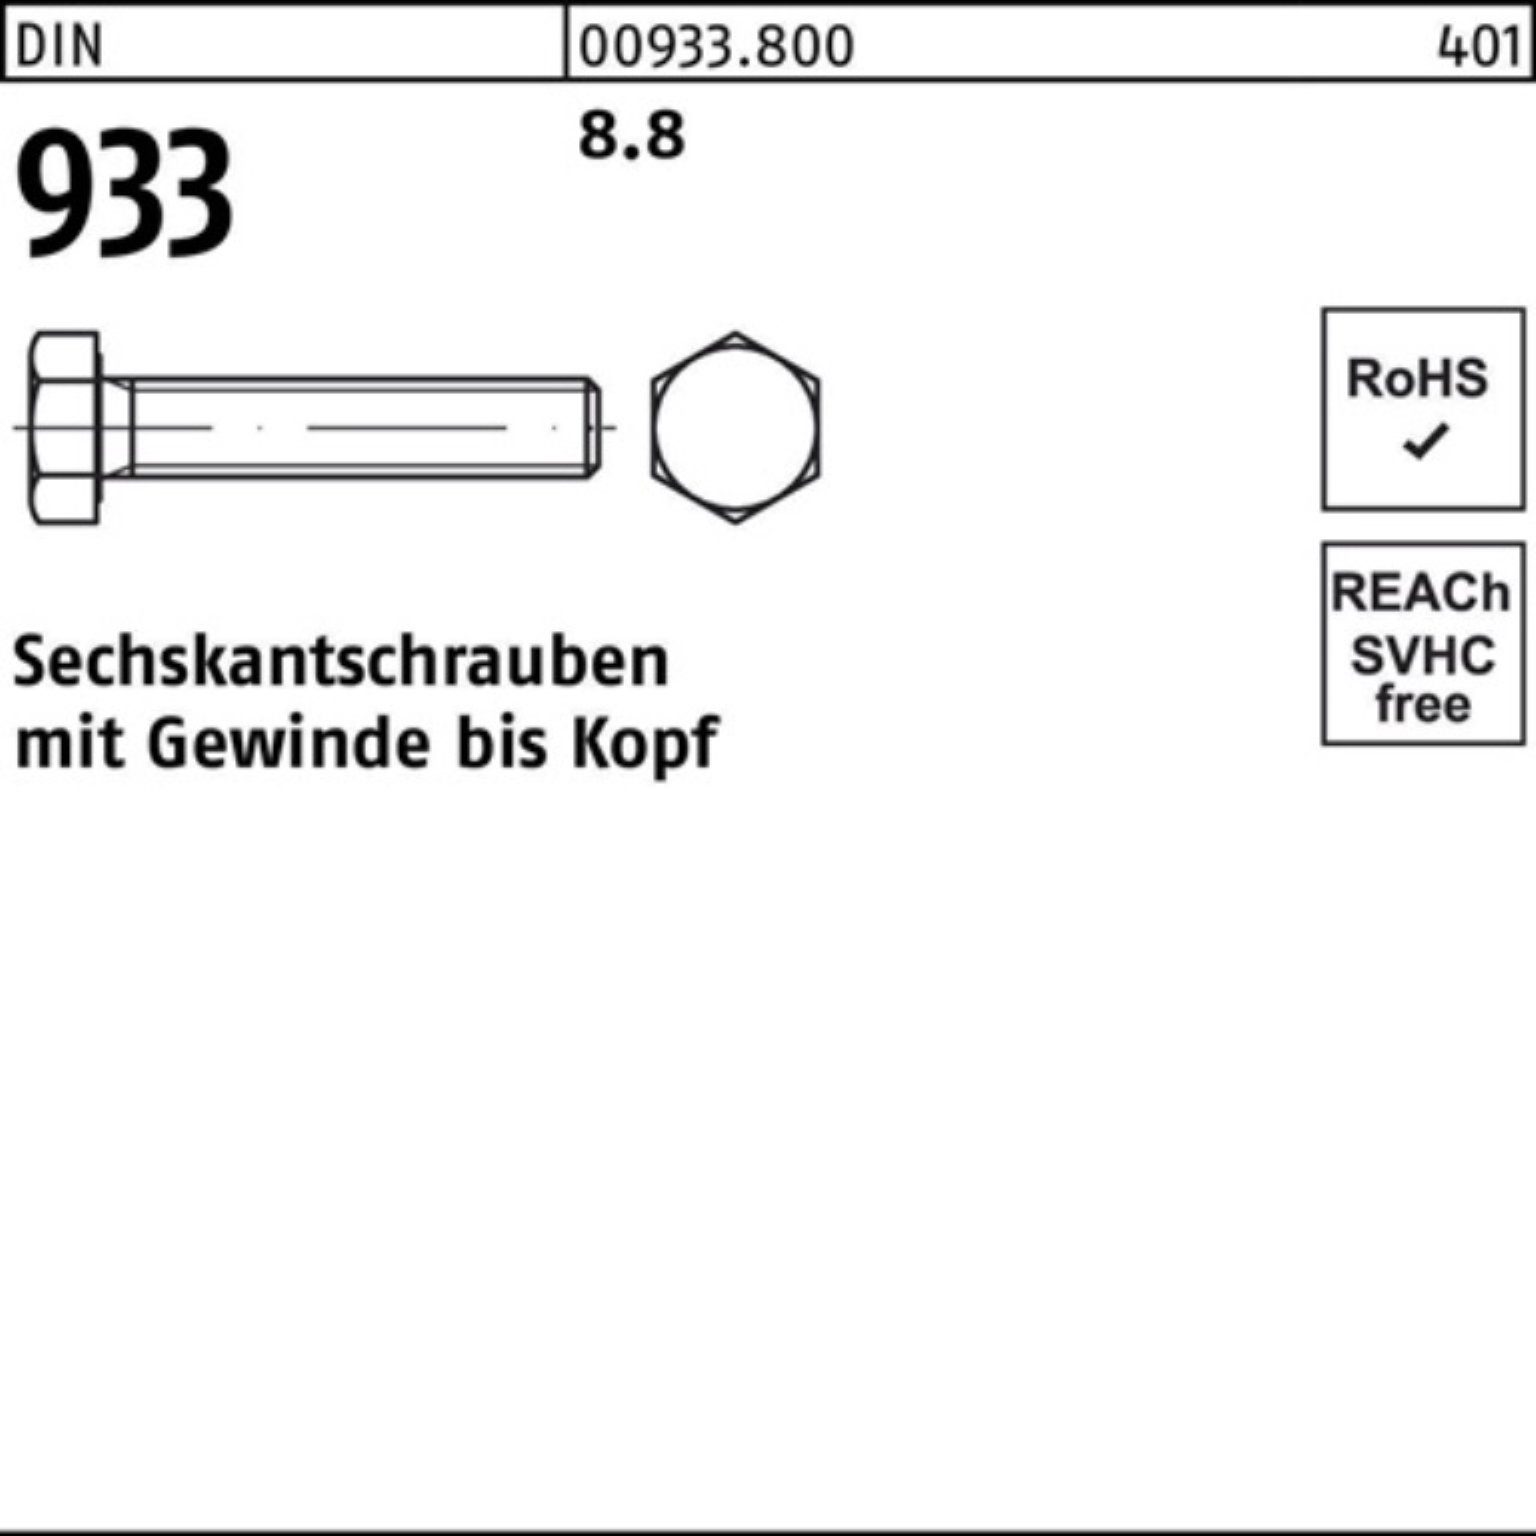 Stück Pack VG Sechskantschraube DIN M16x 8.8 100er 160 DIN Reyher 933 933 Sechskantschraube 25